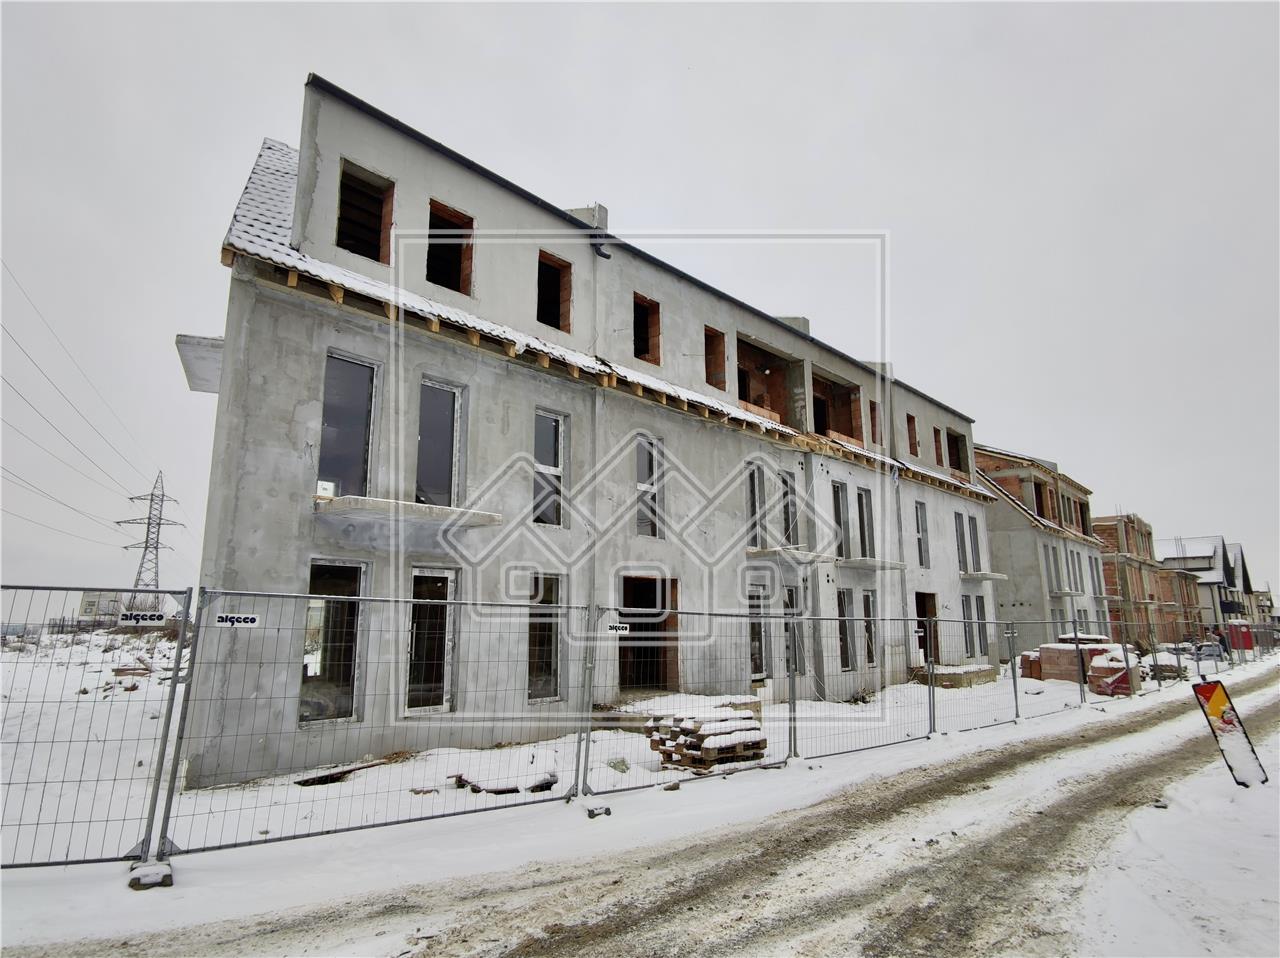 Apartament de vanzare in Sibiu - in vila - 4 camere si gradina 100 mp